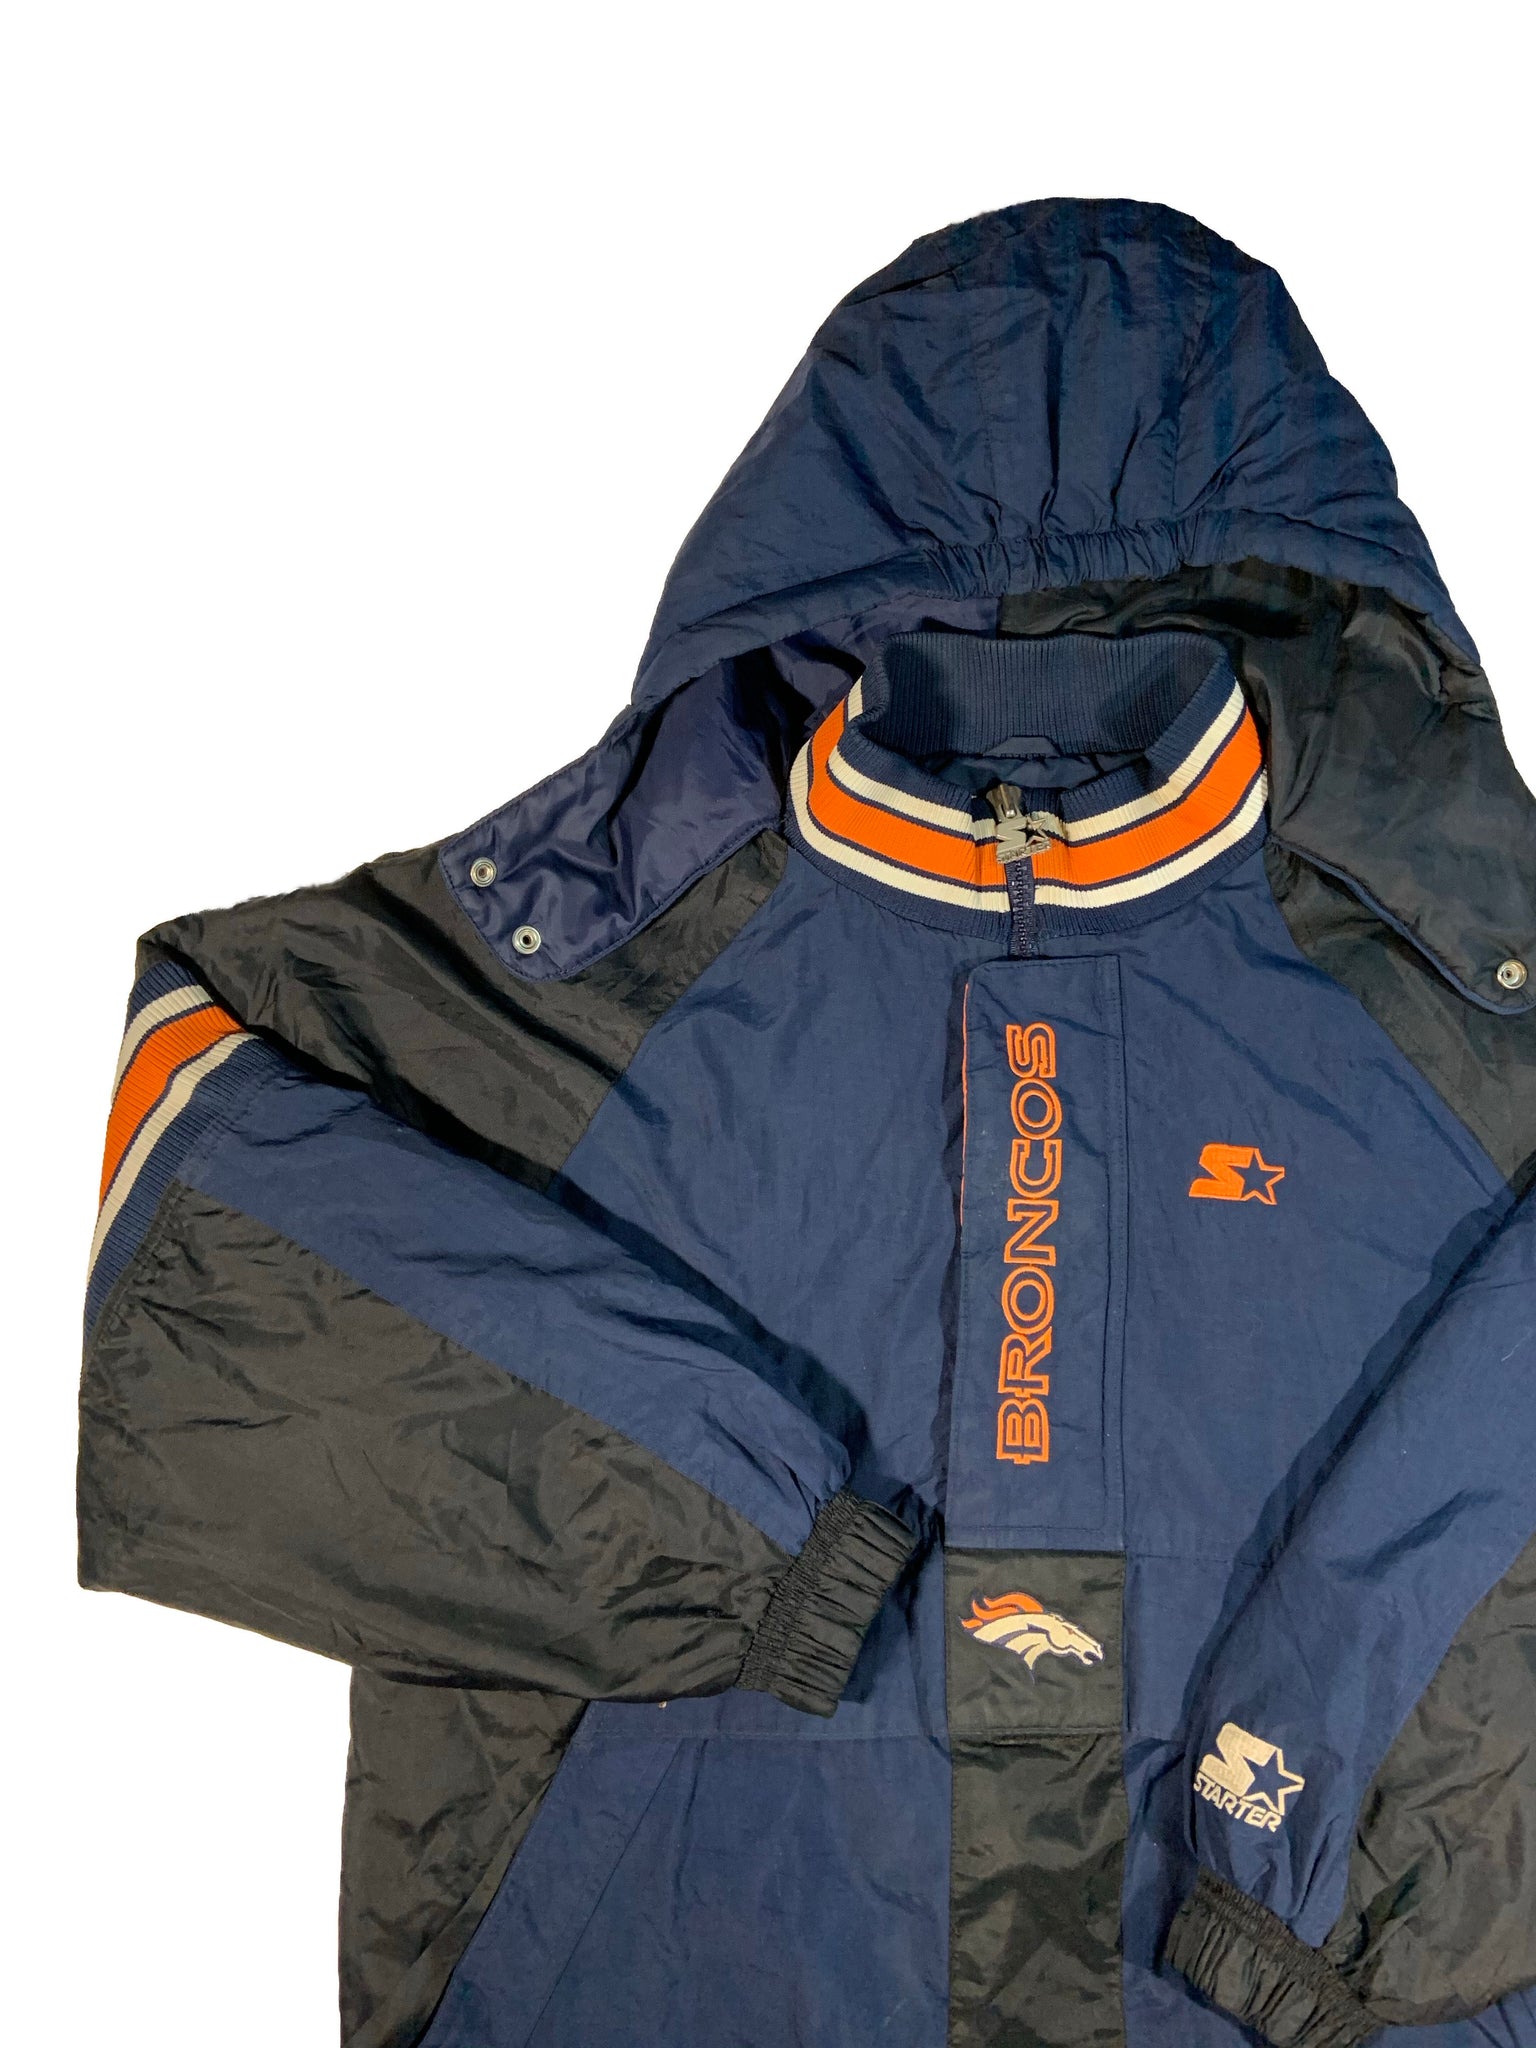 Denver Broncos Jacket Hooded Jacket Starter NFL Jacket Hoodie